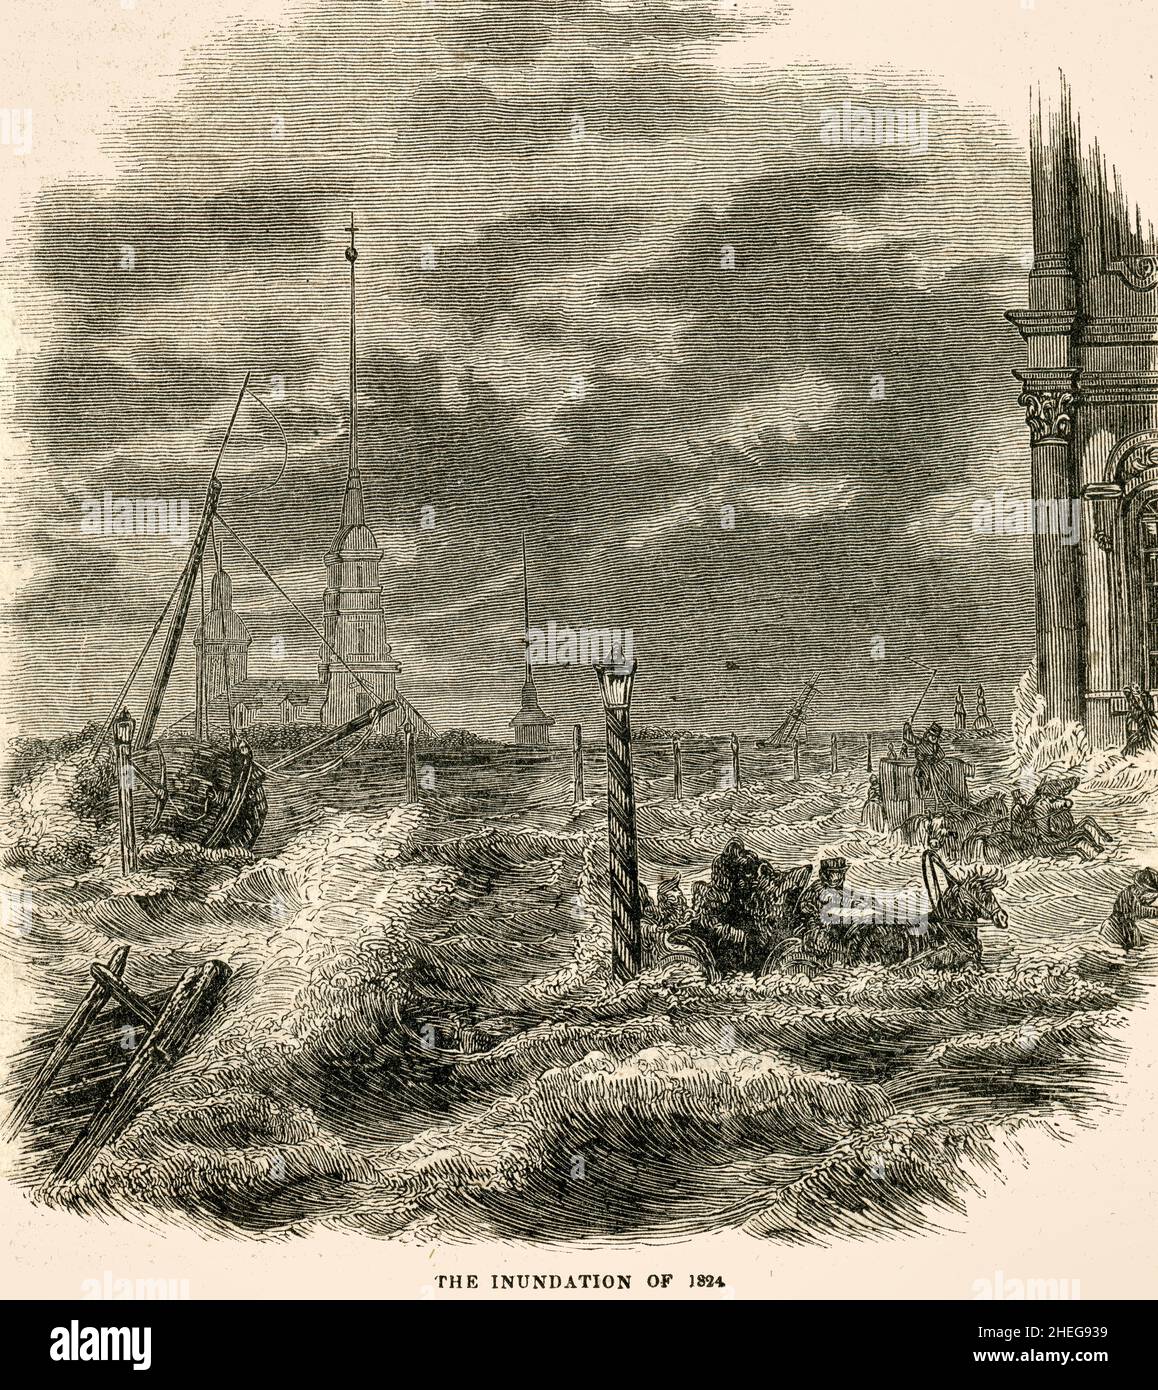 Die Überschwemmung von 1924 - St. Petersburg, Russland Sintflut im Jahr 1824 Stockfoto